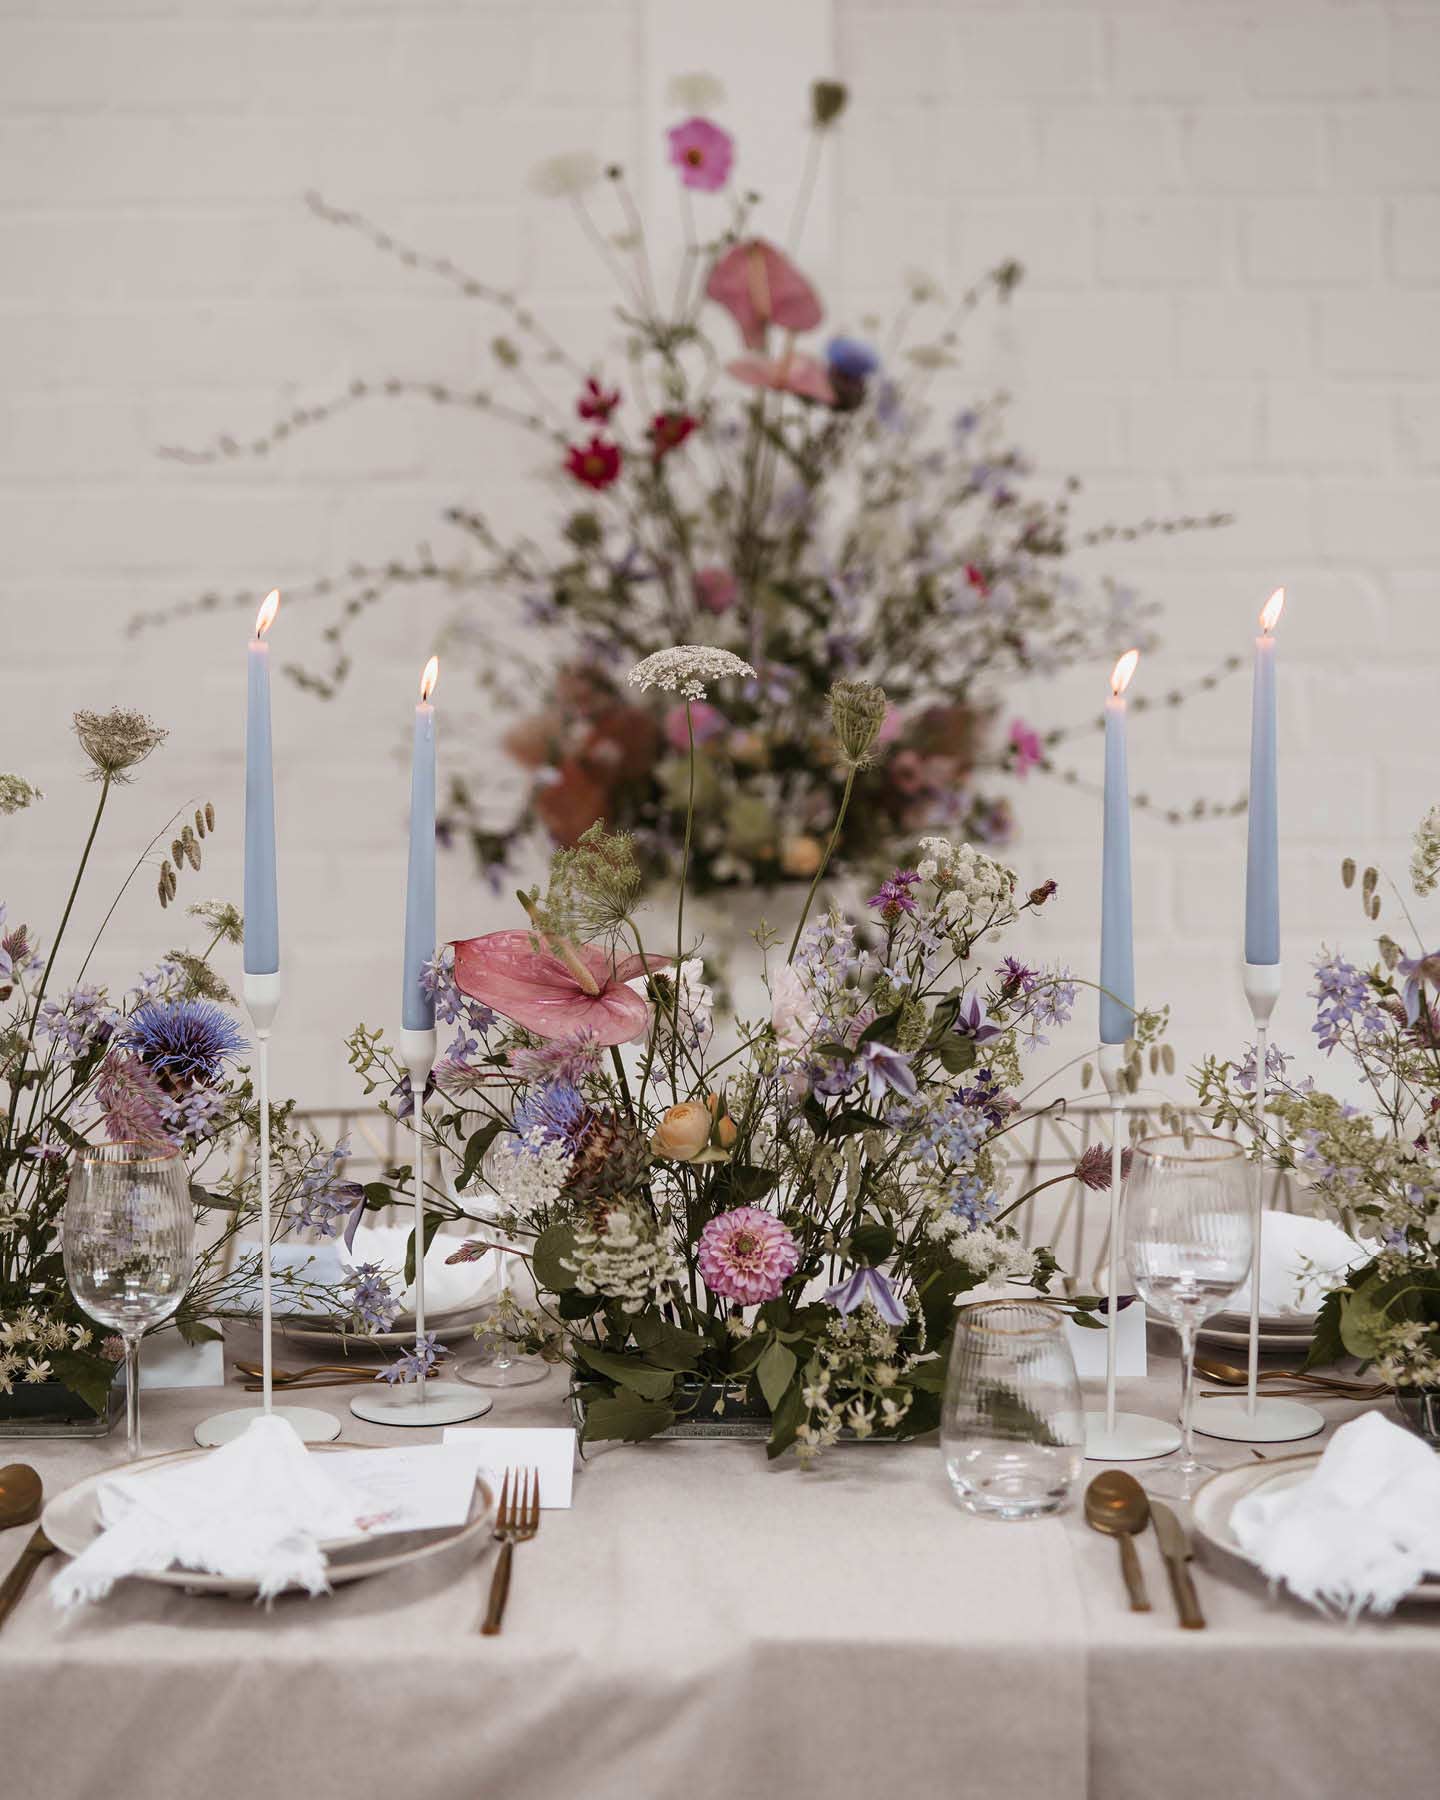 Ein weit gefächertes Blumenarrangement ist das Highlight auf der Hochzeitstafel